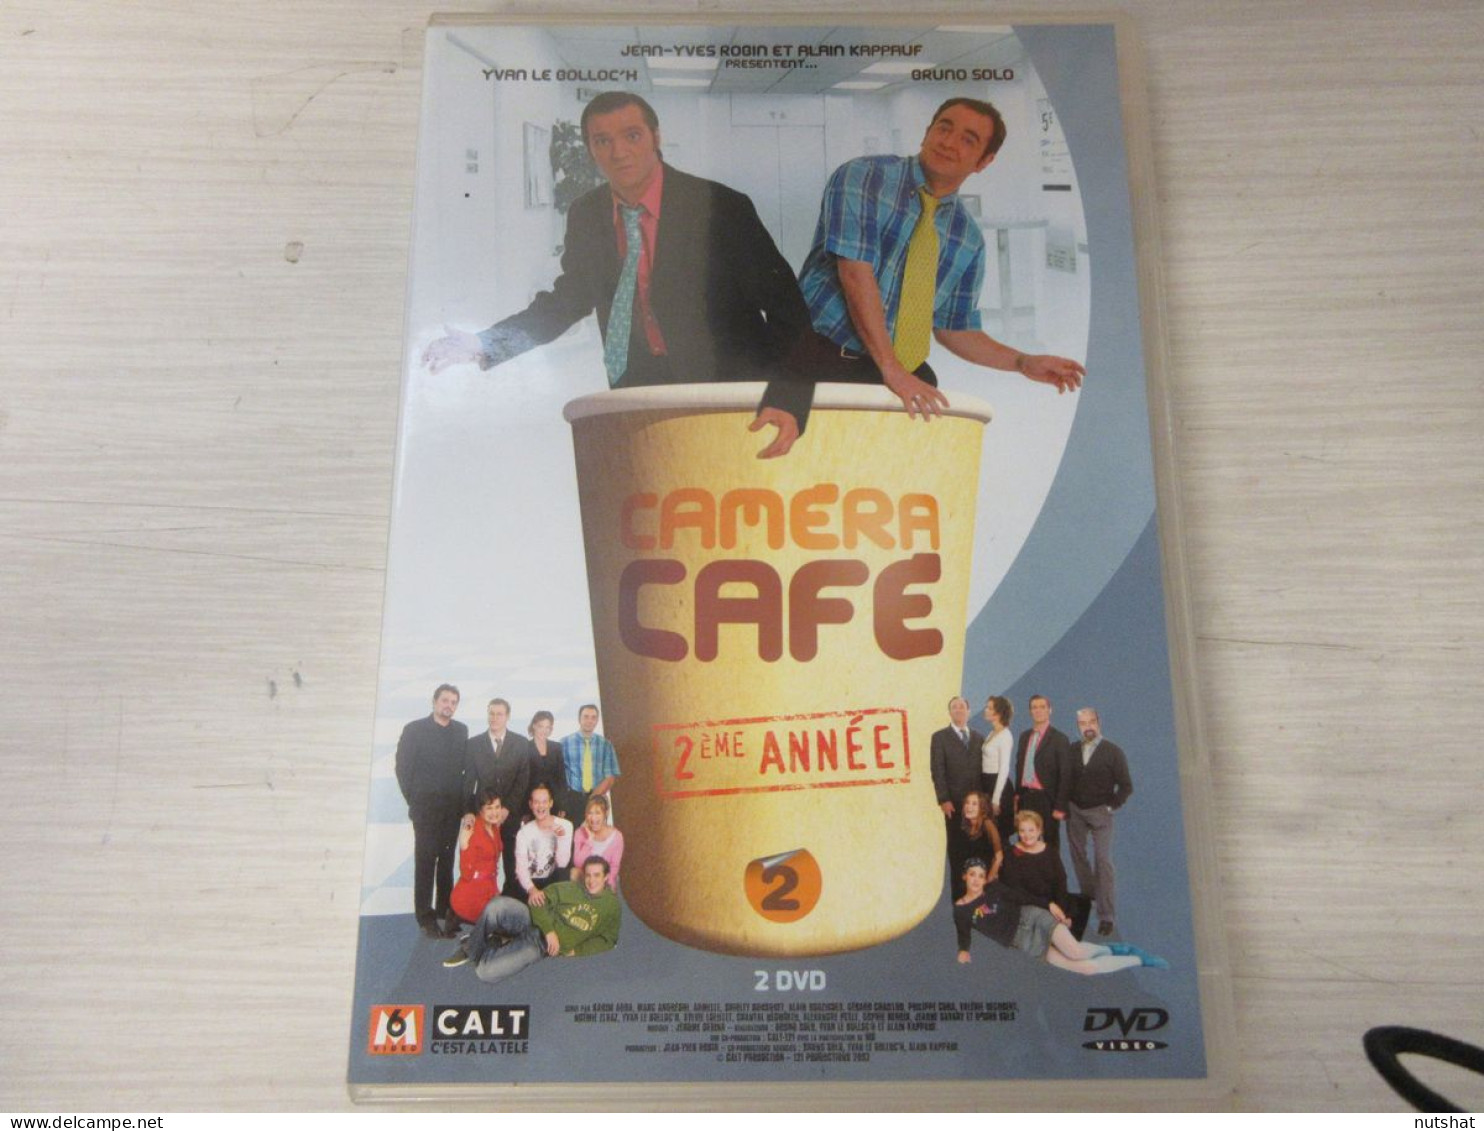 DVD SERIE TV CAMERA CAFE 2eme ANNEE Bruno SOLO Yvan Le BOLLOC'H 2xDVD 2002  - Serie E Programmi TV